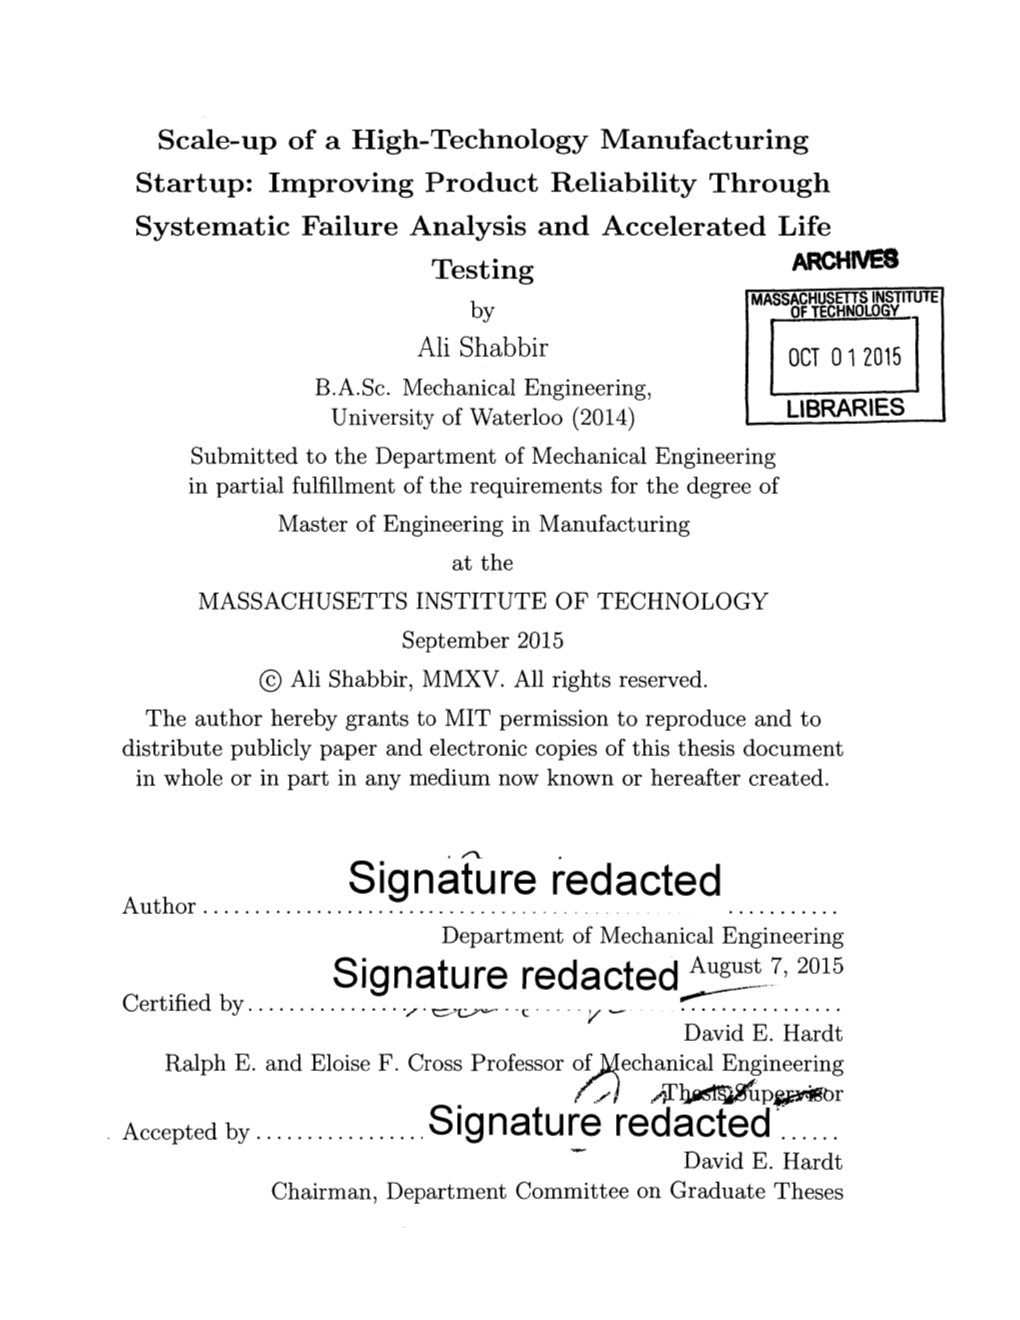 Signature Redacted August 7, 2015 C Ifdb Y